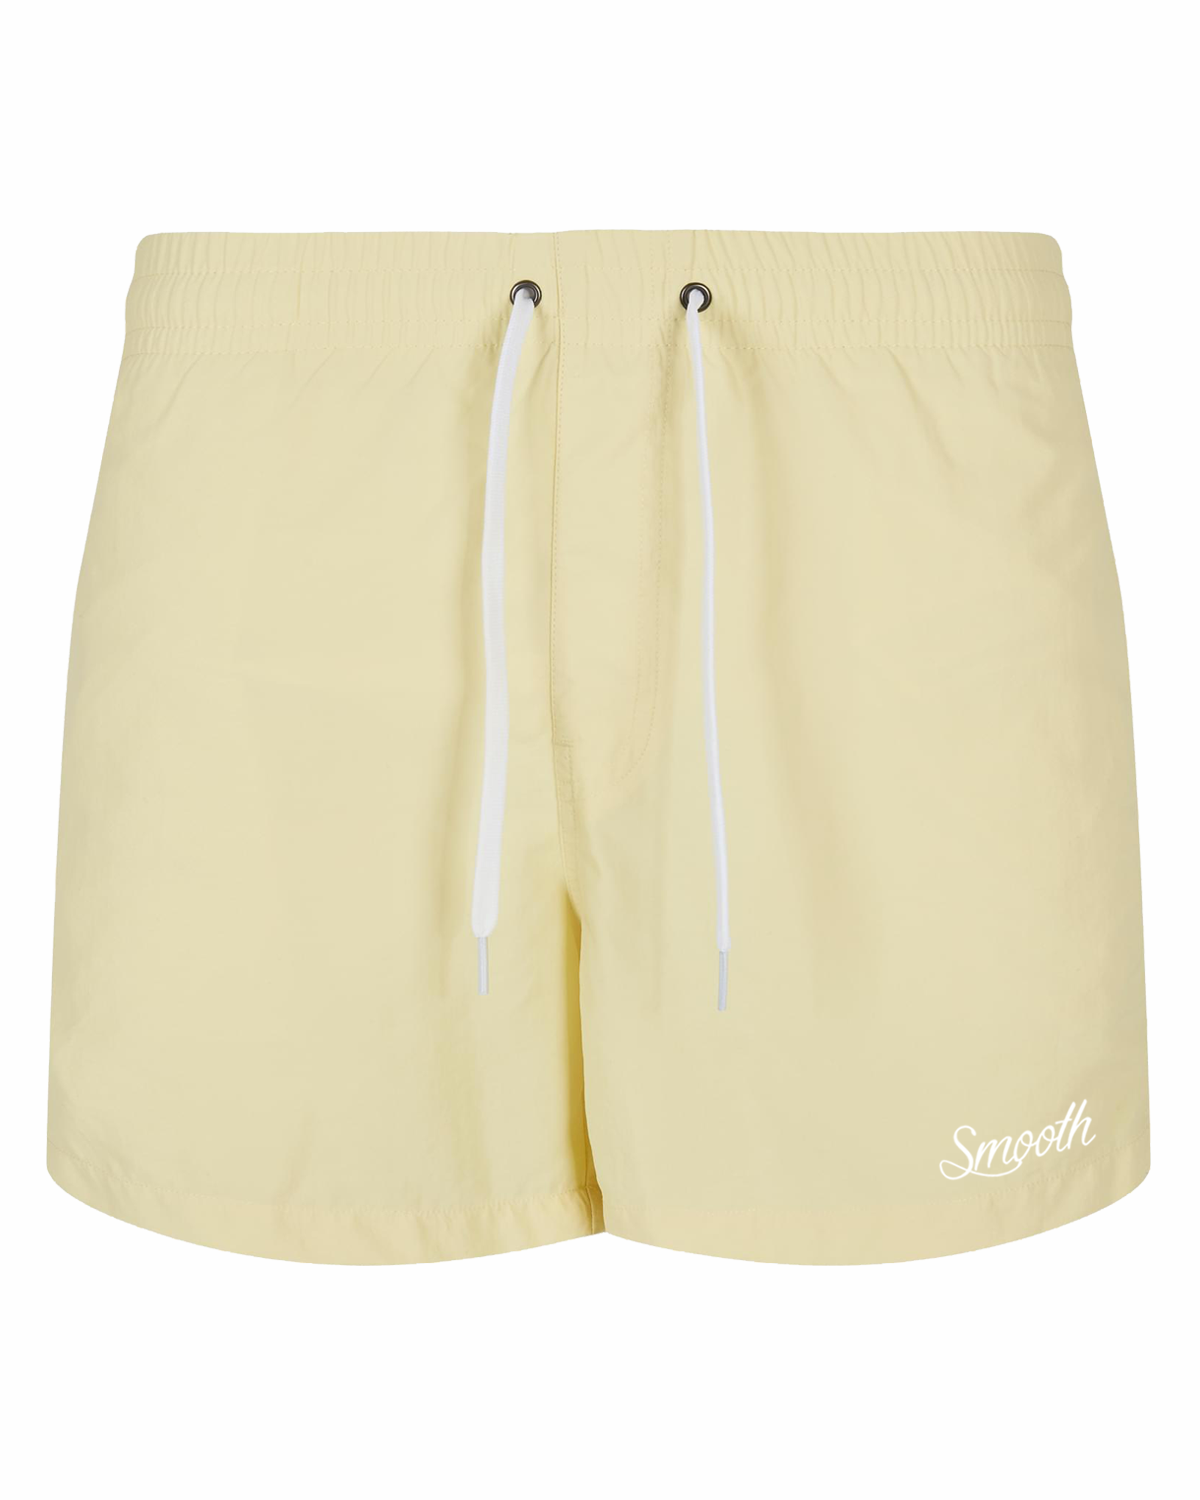 Soft Yellow Swim Short / Originals Minimal White